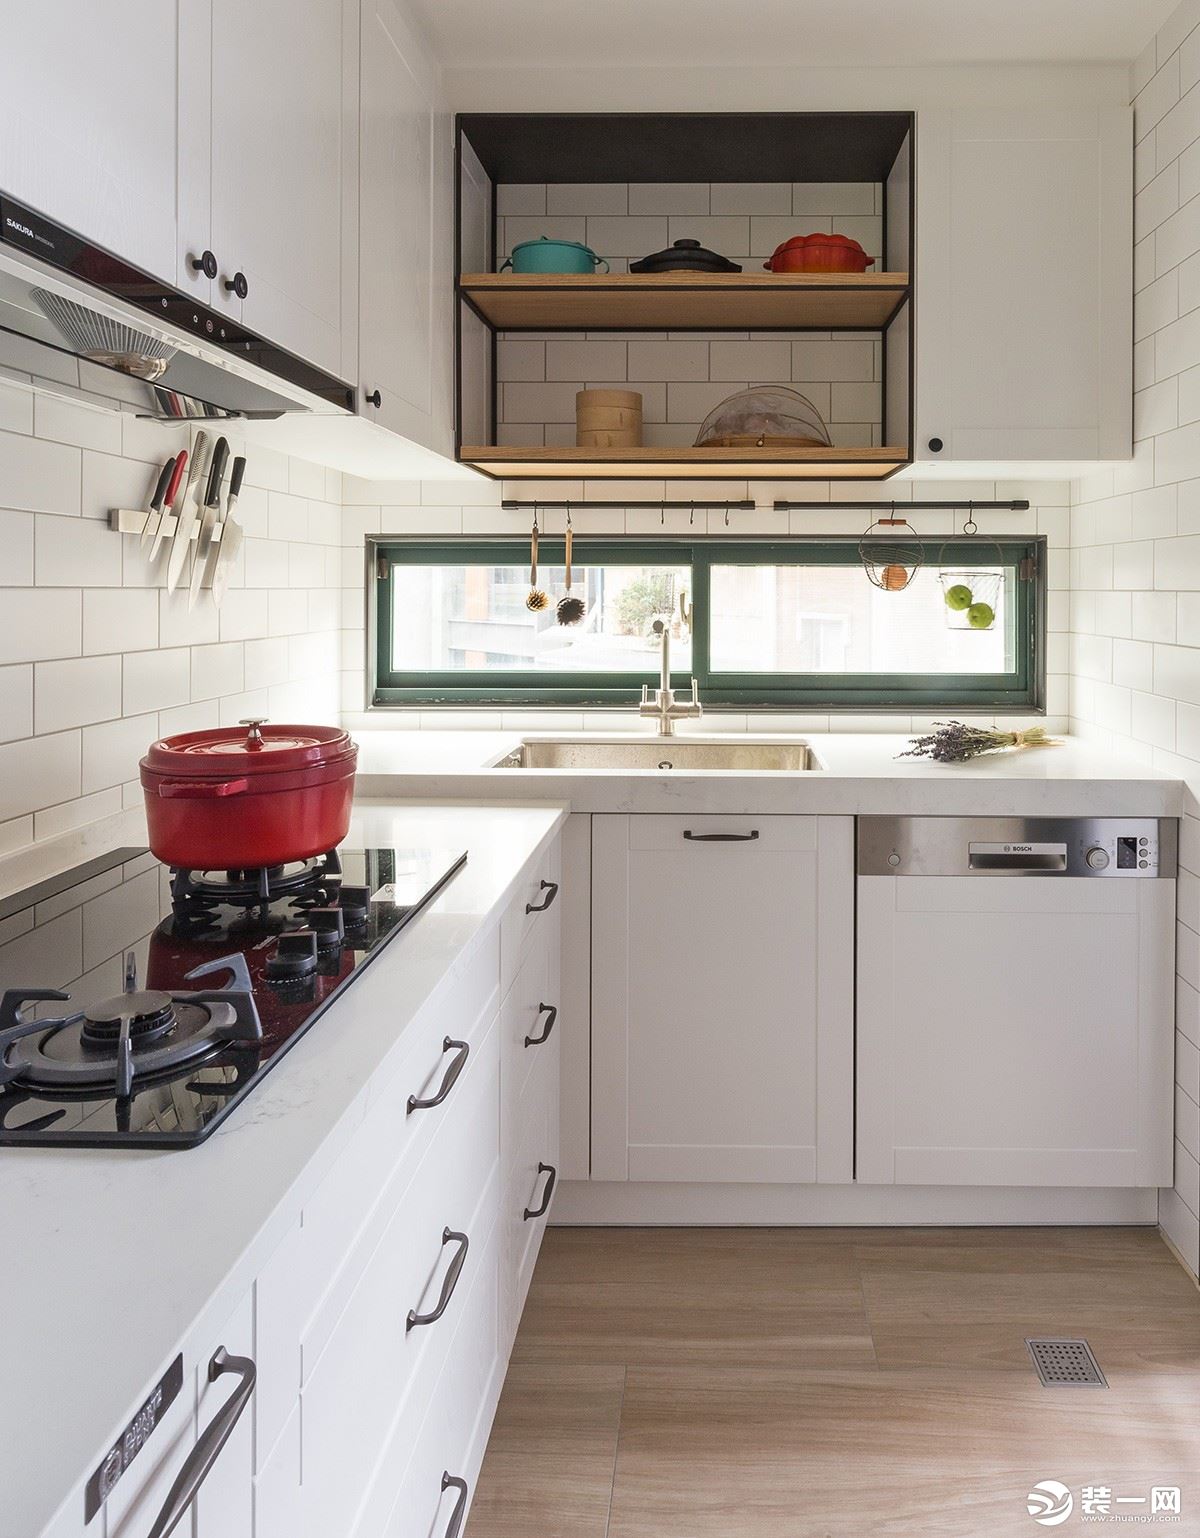 厨房：厨房选用浅棕色木纹砖，搭配墙面的简白小口砖，与整体纯白橱柜、浅绿色窗框融合，带来清爽自然的气息